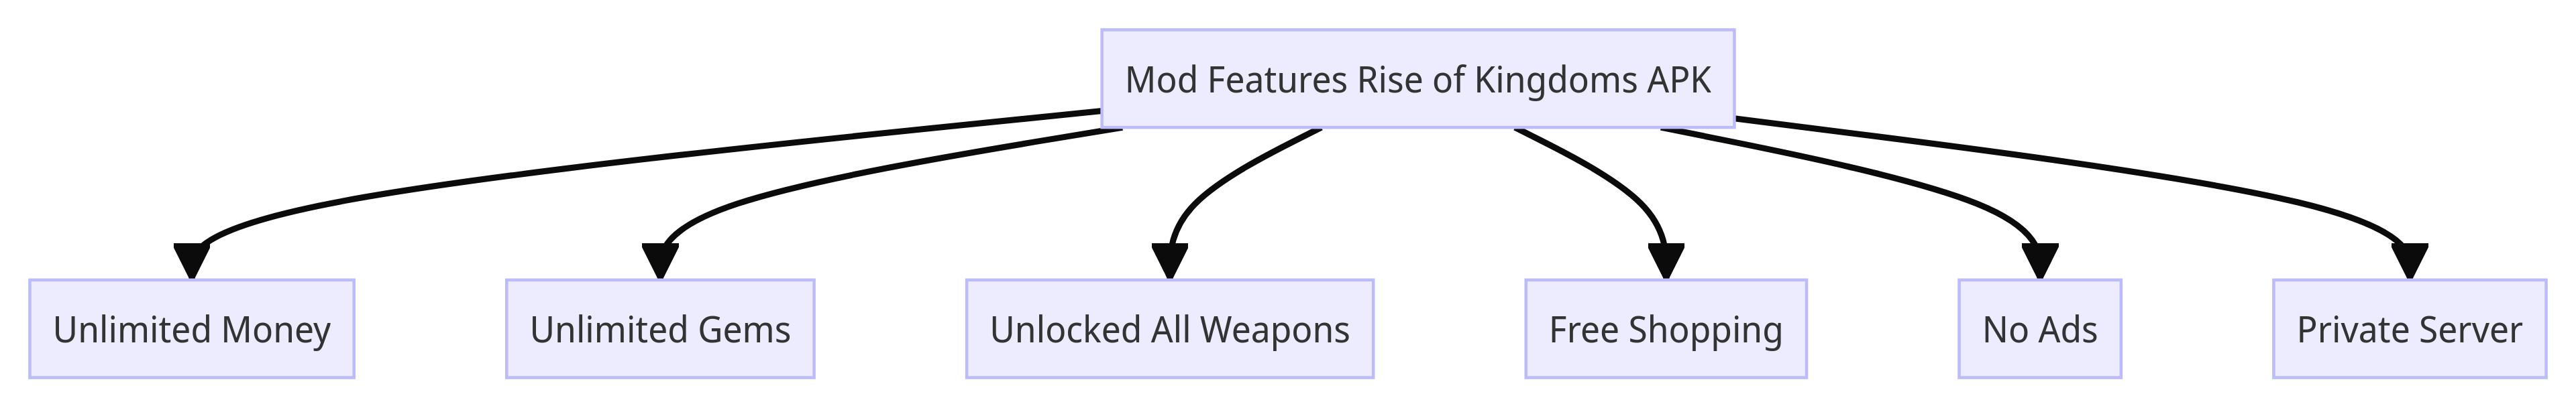 Mod Features Rise of Kingdoms APK